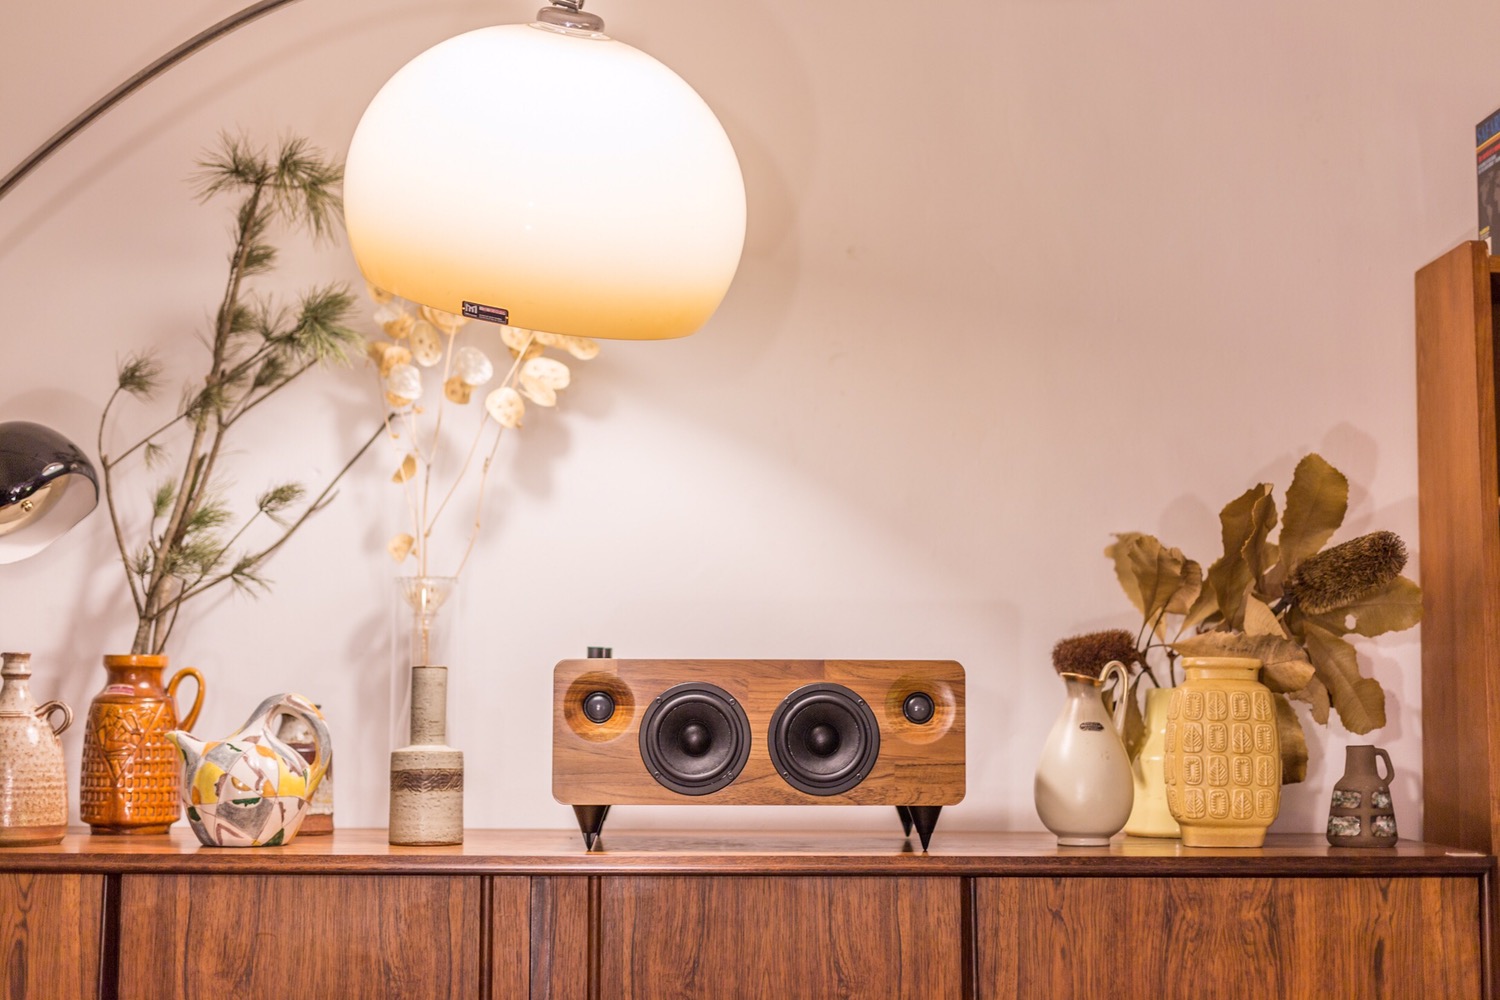 min7 handmade wooden speaker kickstarter minfort 5